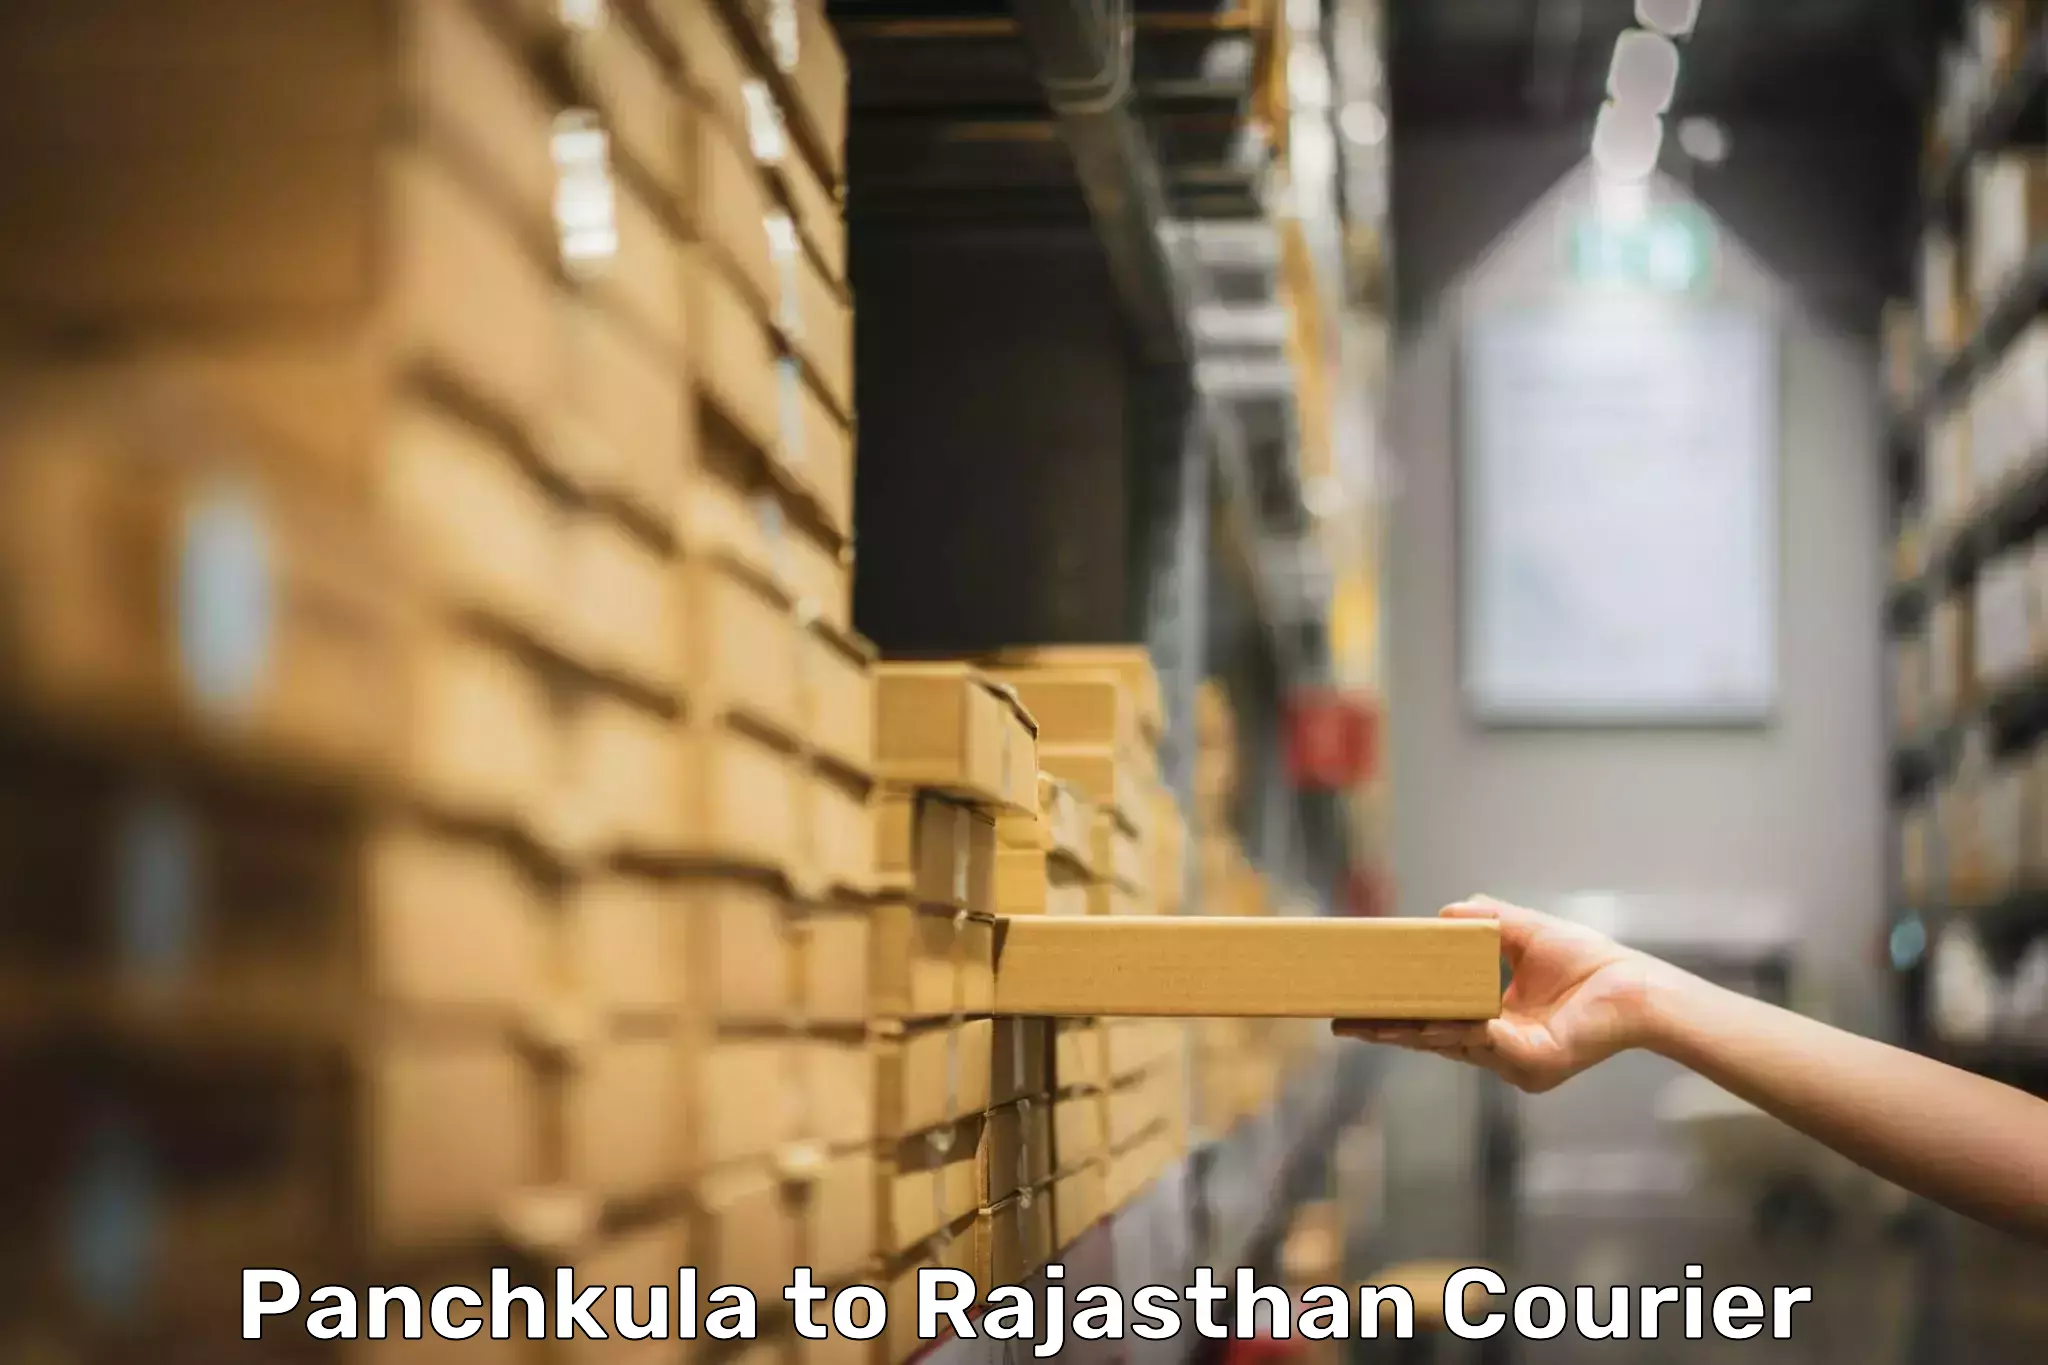 Baggage shipping experience Panchkula to Kuchaman